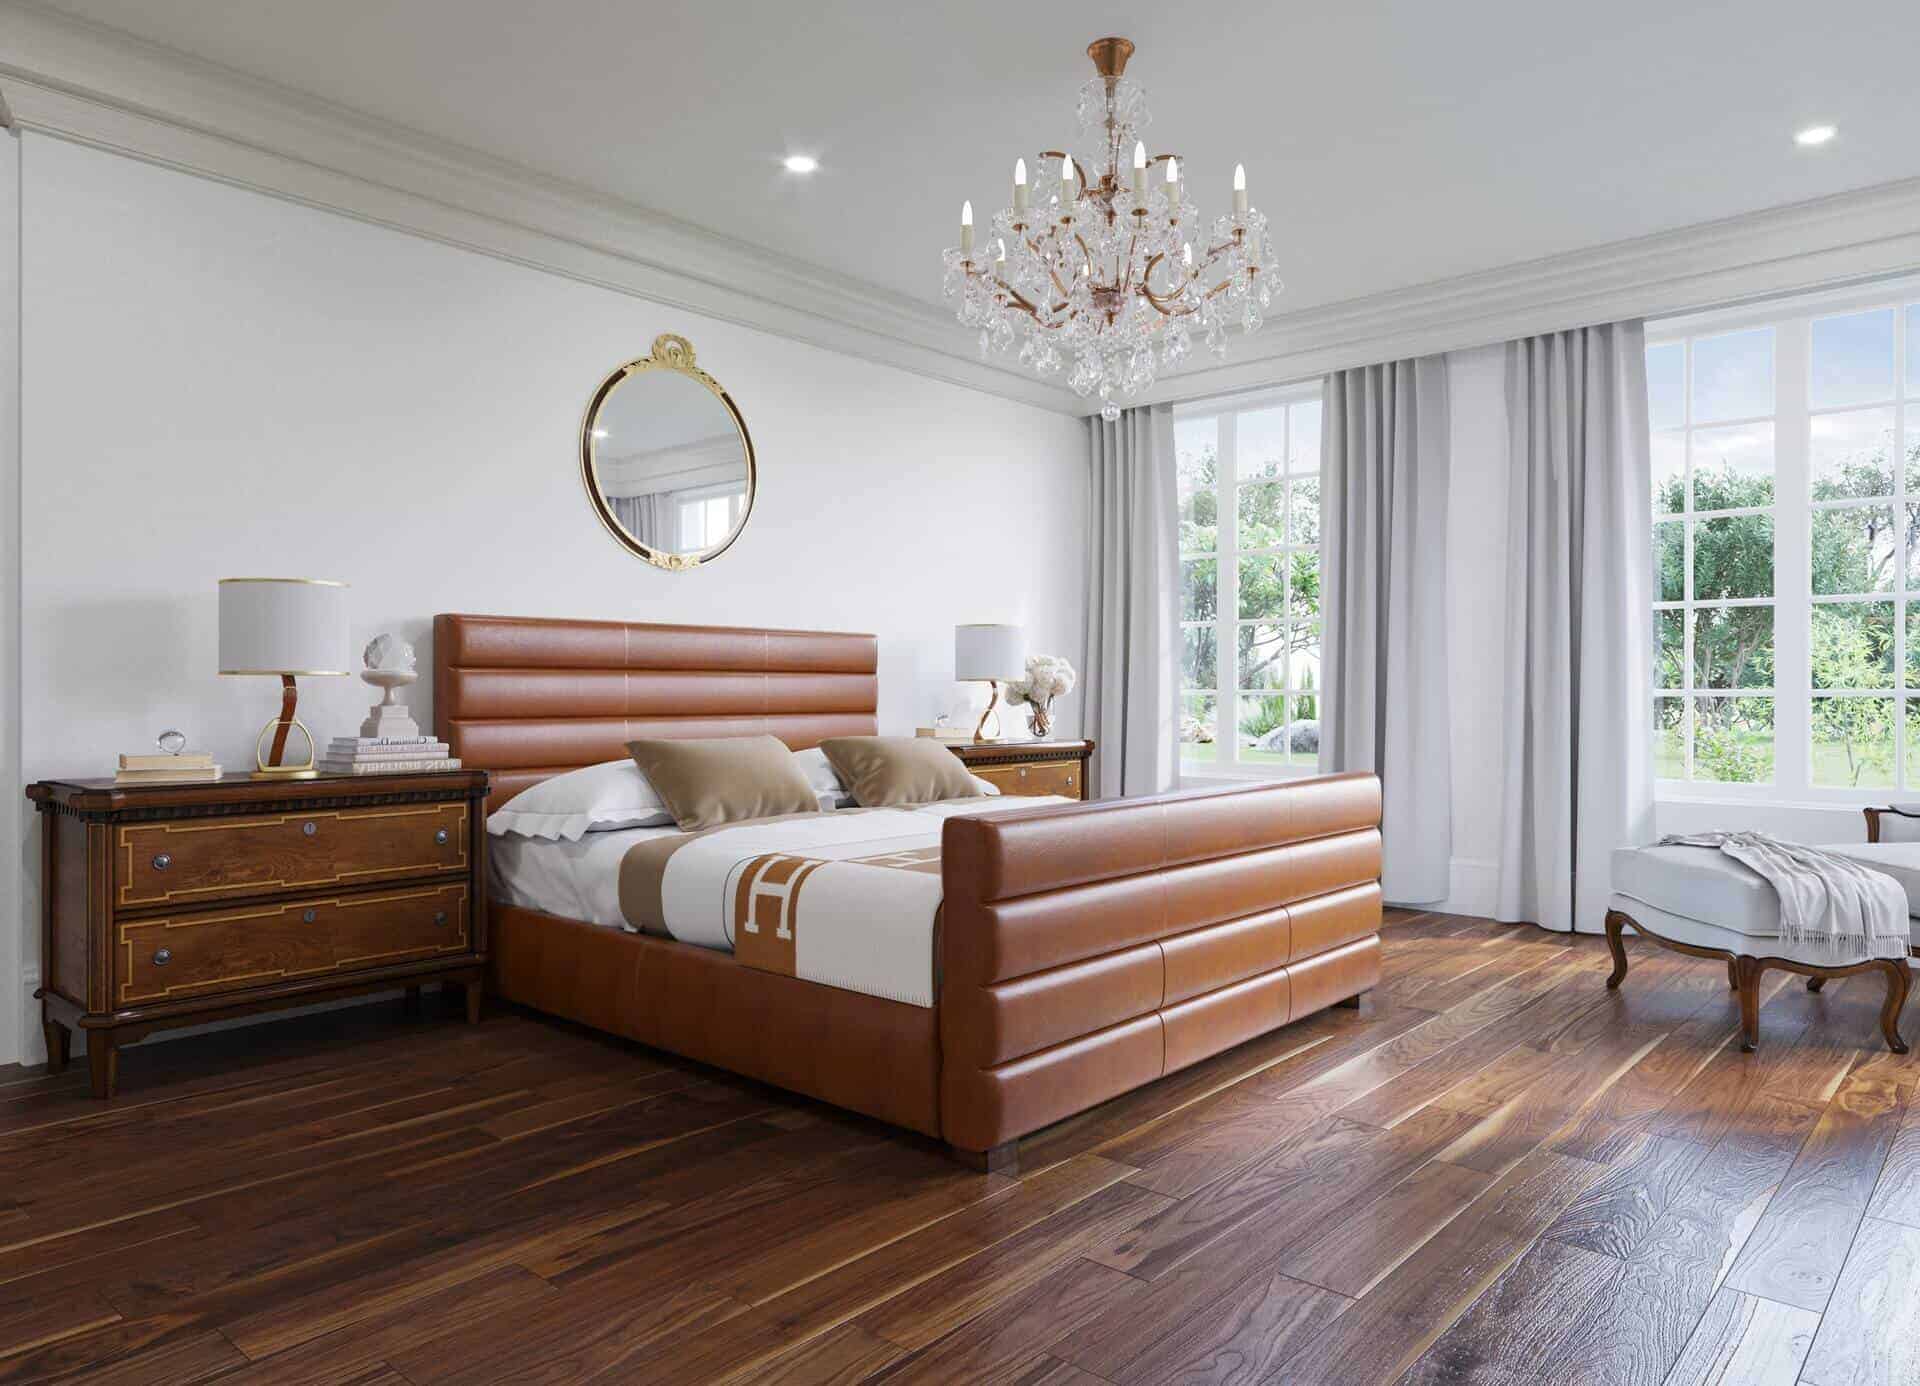 wooden flooring tiles design for bedroom